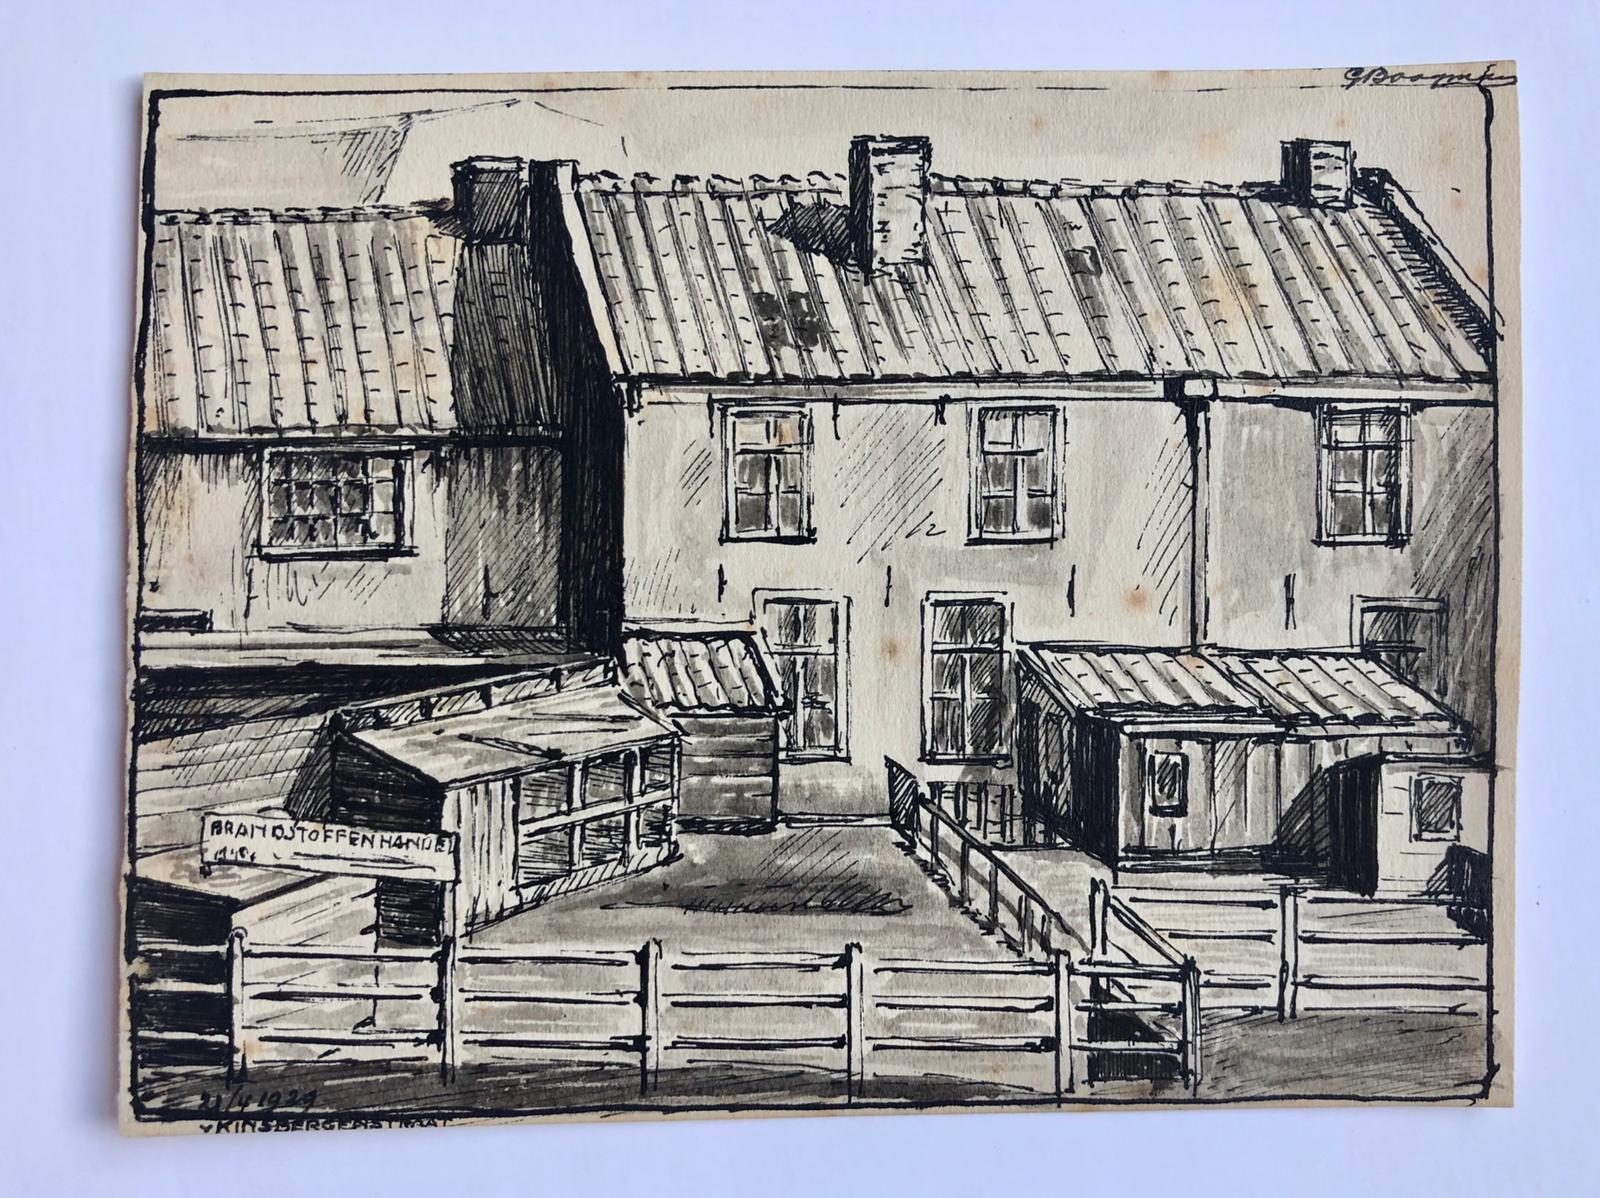  - [Pen drawing, 1929] Gezicht op oude huisjes met voorzijde aan de Baarsjes, gezien vanuit de Van Kinsbergenstraat te Amsterdam in 1929. Pentekening door G. Boogman. 12x18 cm.